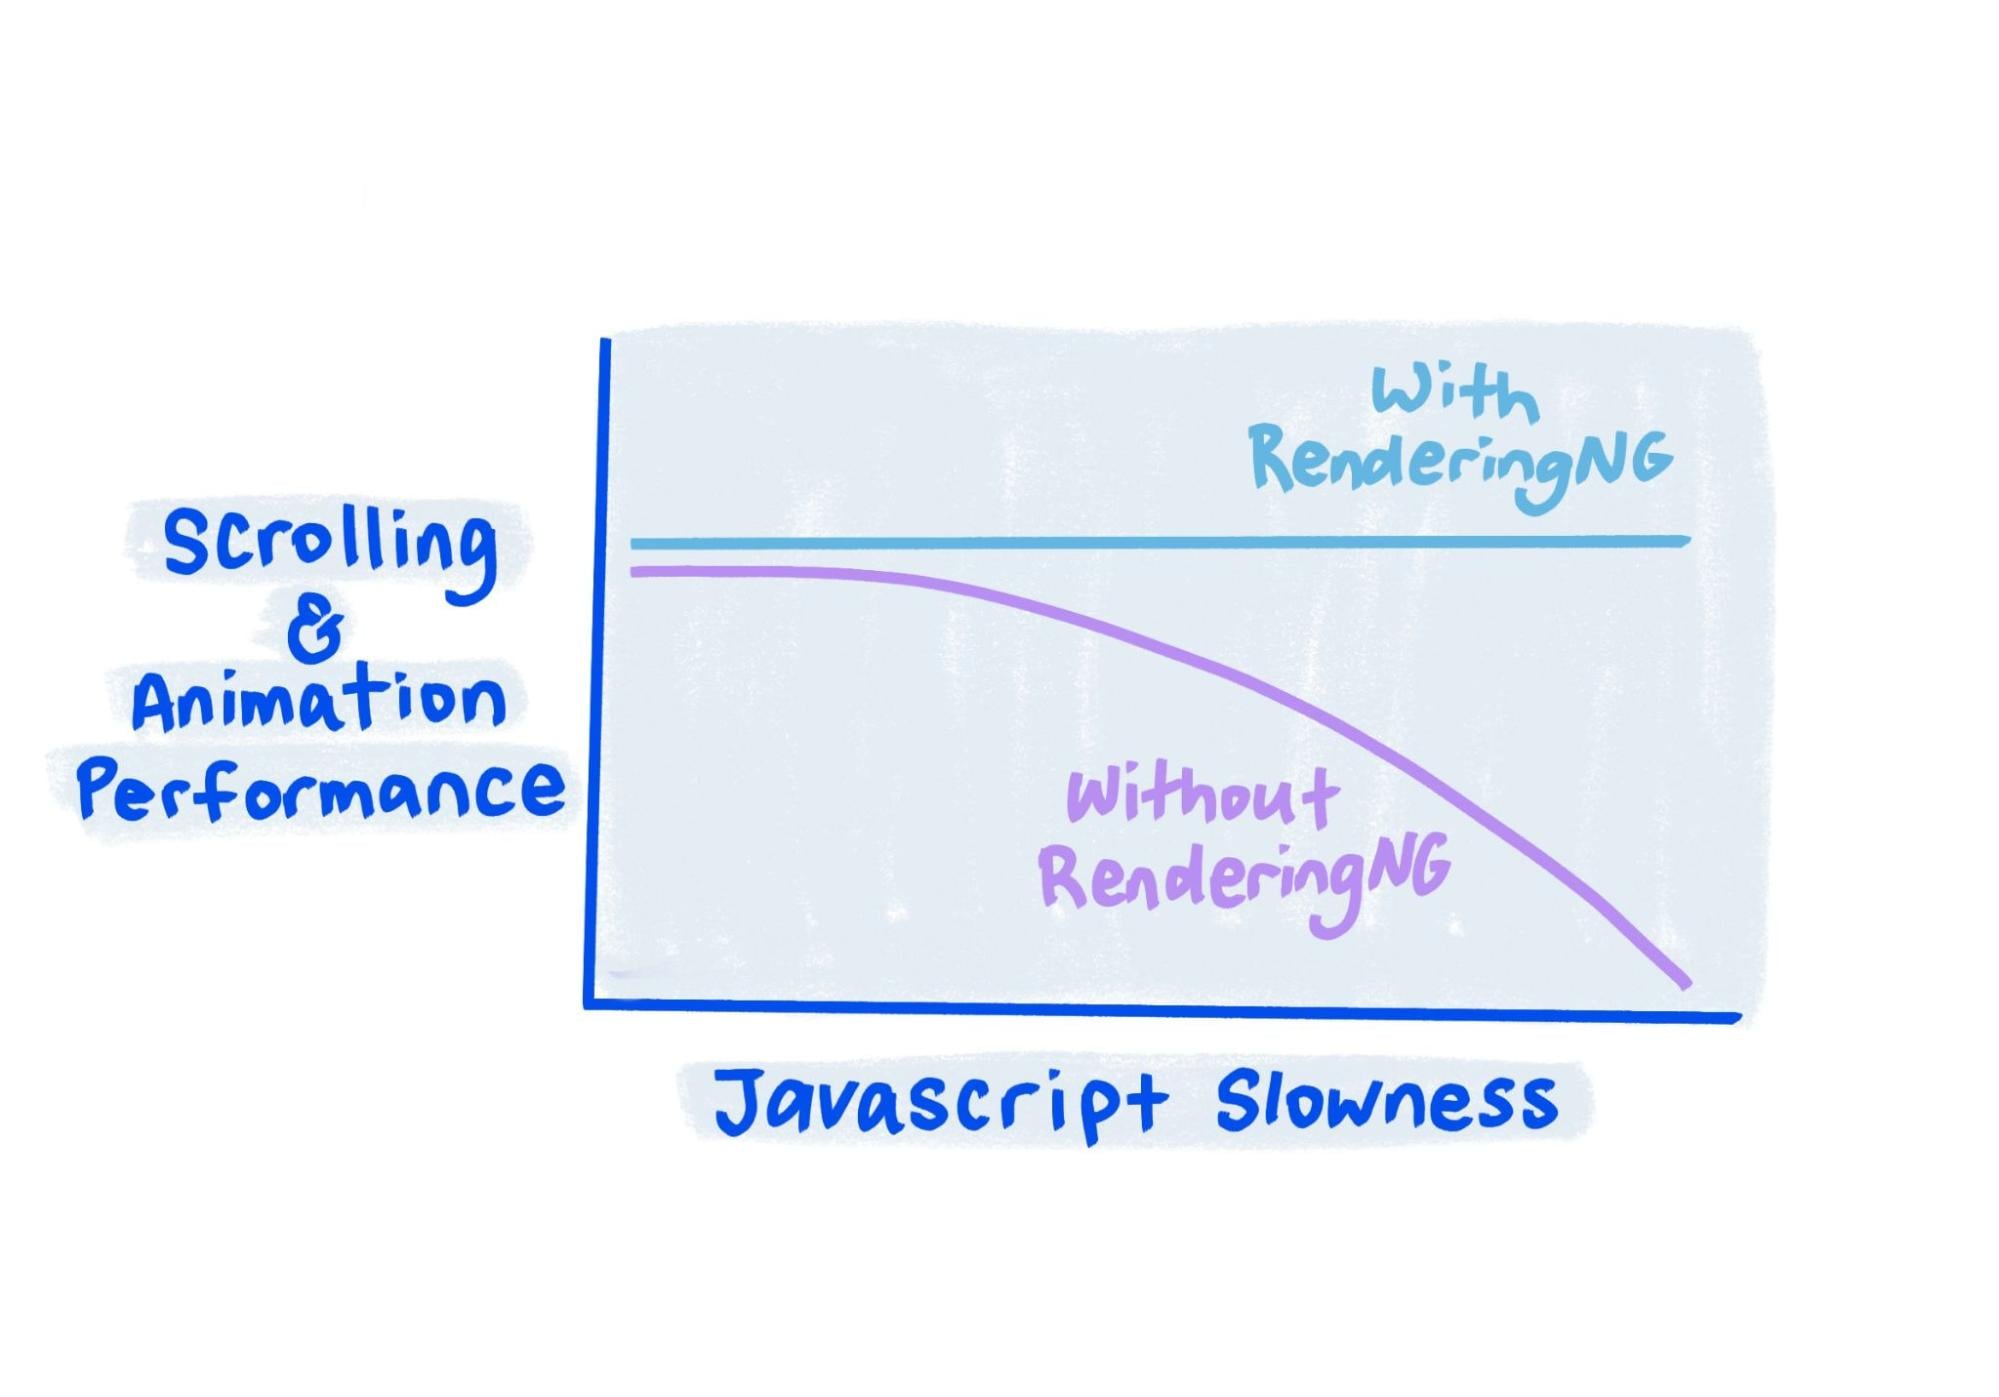 Sketch показывает, что с RenderingNG производительность остается стабильной, даже когда JavaScript очень медленный.